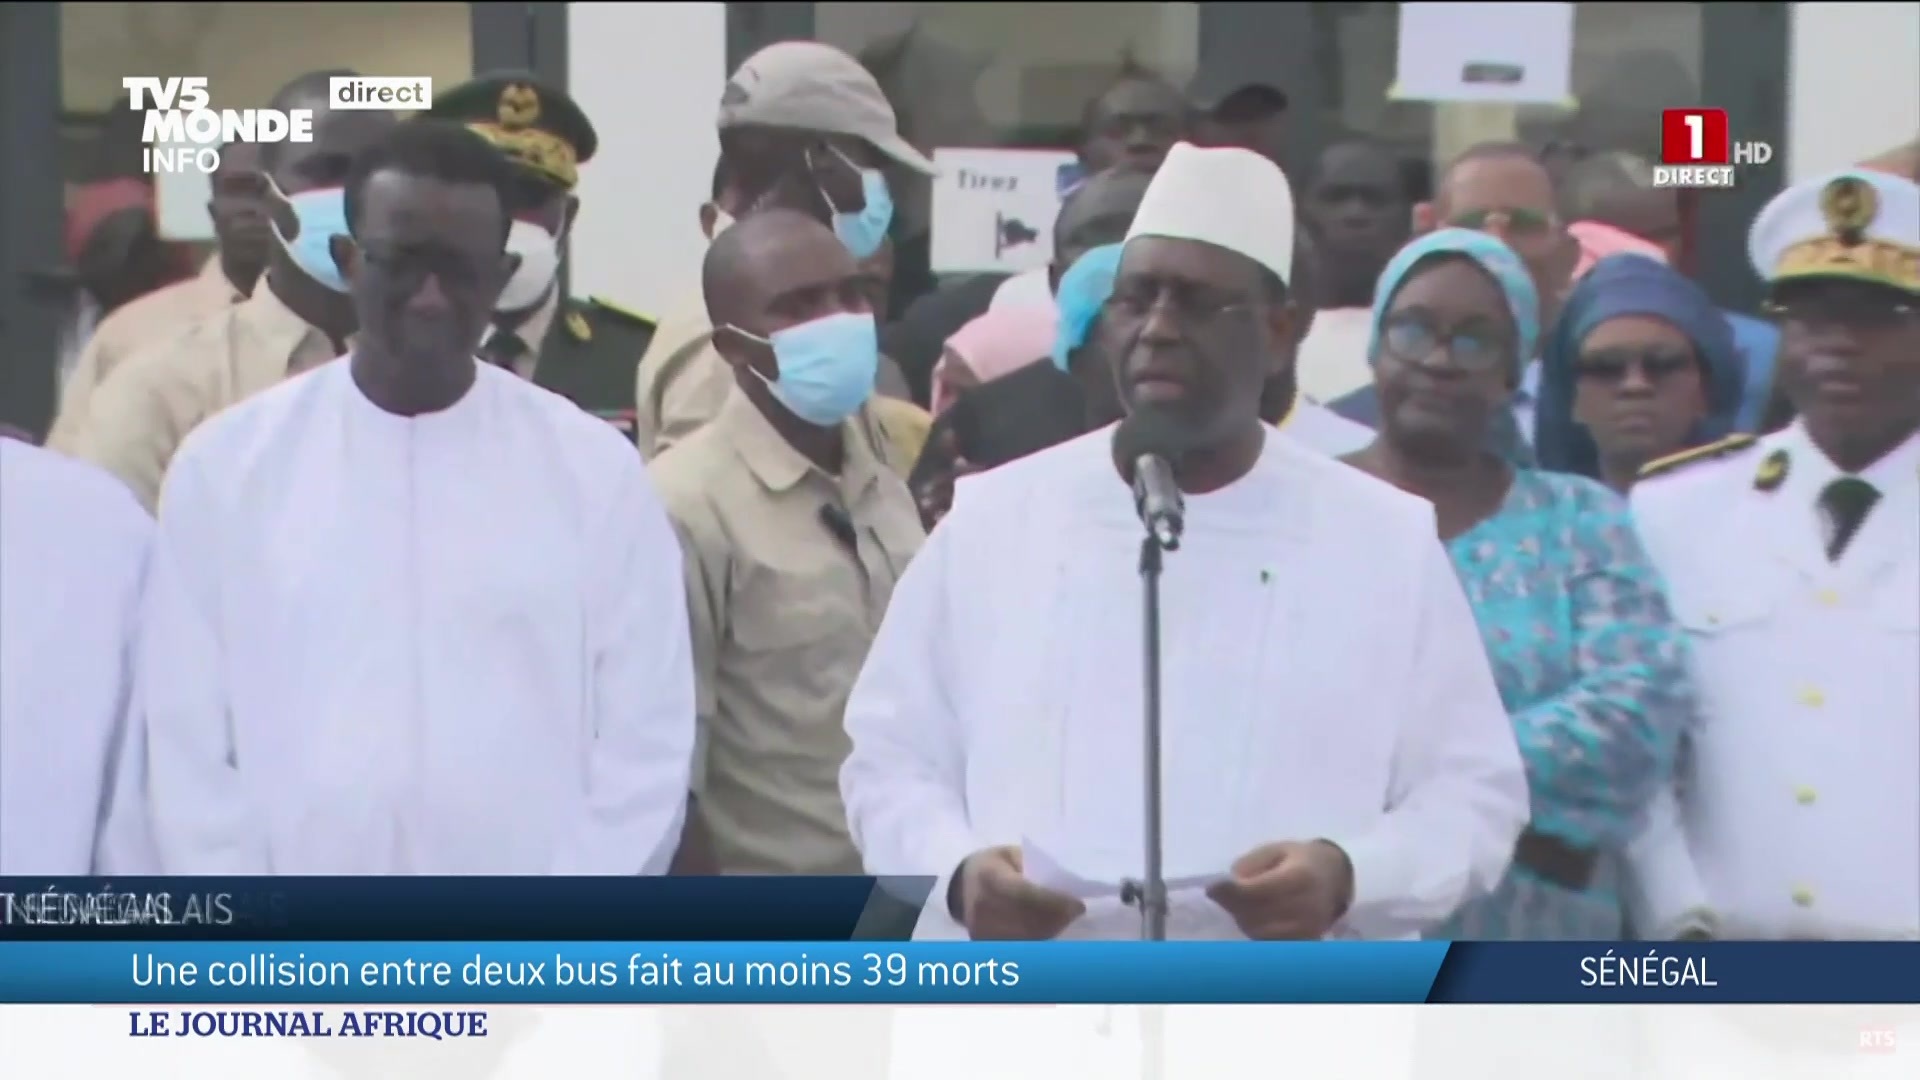 Le journal Afrique TV5MONDE on Twitter: "Au Sénégal, c'est l'accident le  plus meurtrier de ces dernières années. Le président, Macky Sall, vient de  décréter un deuil national de trois jours après une